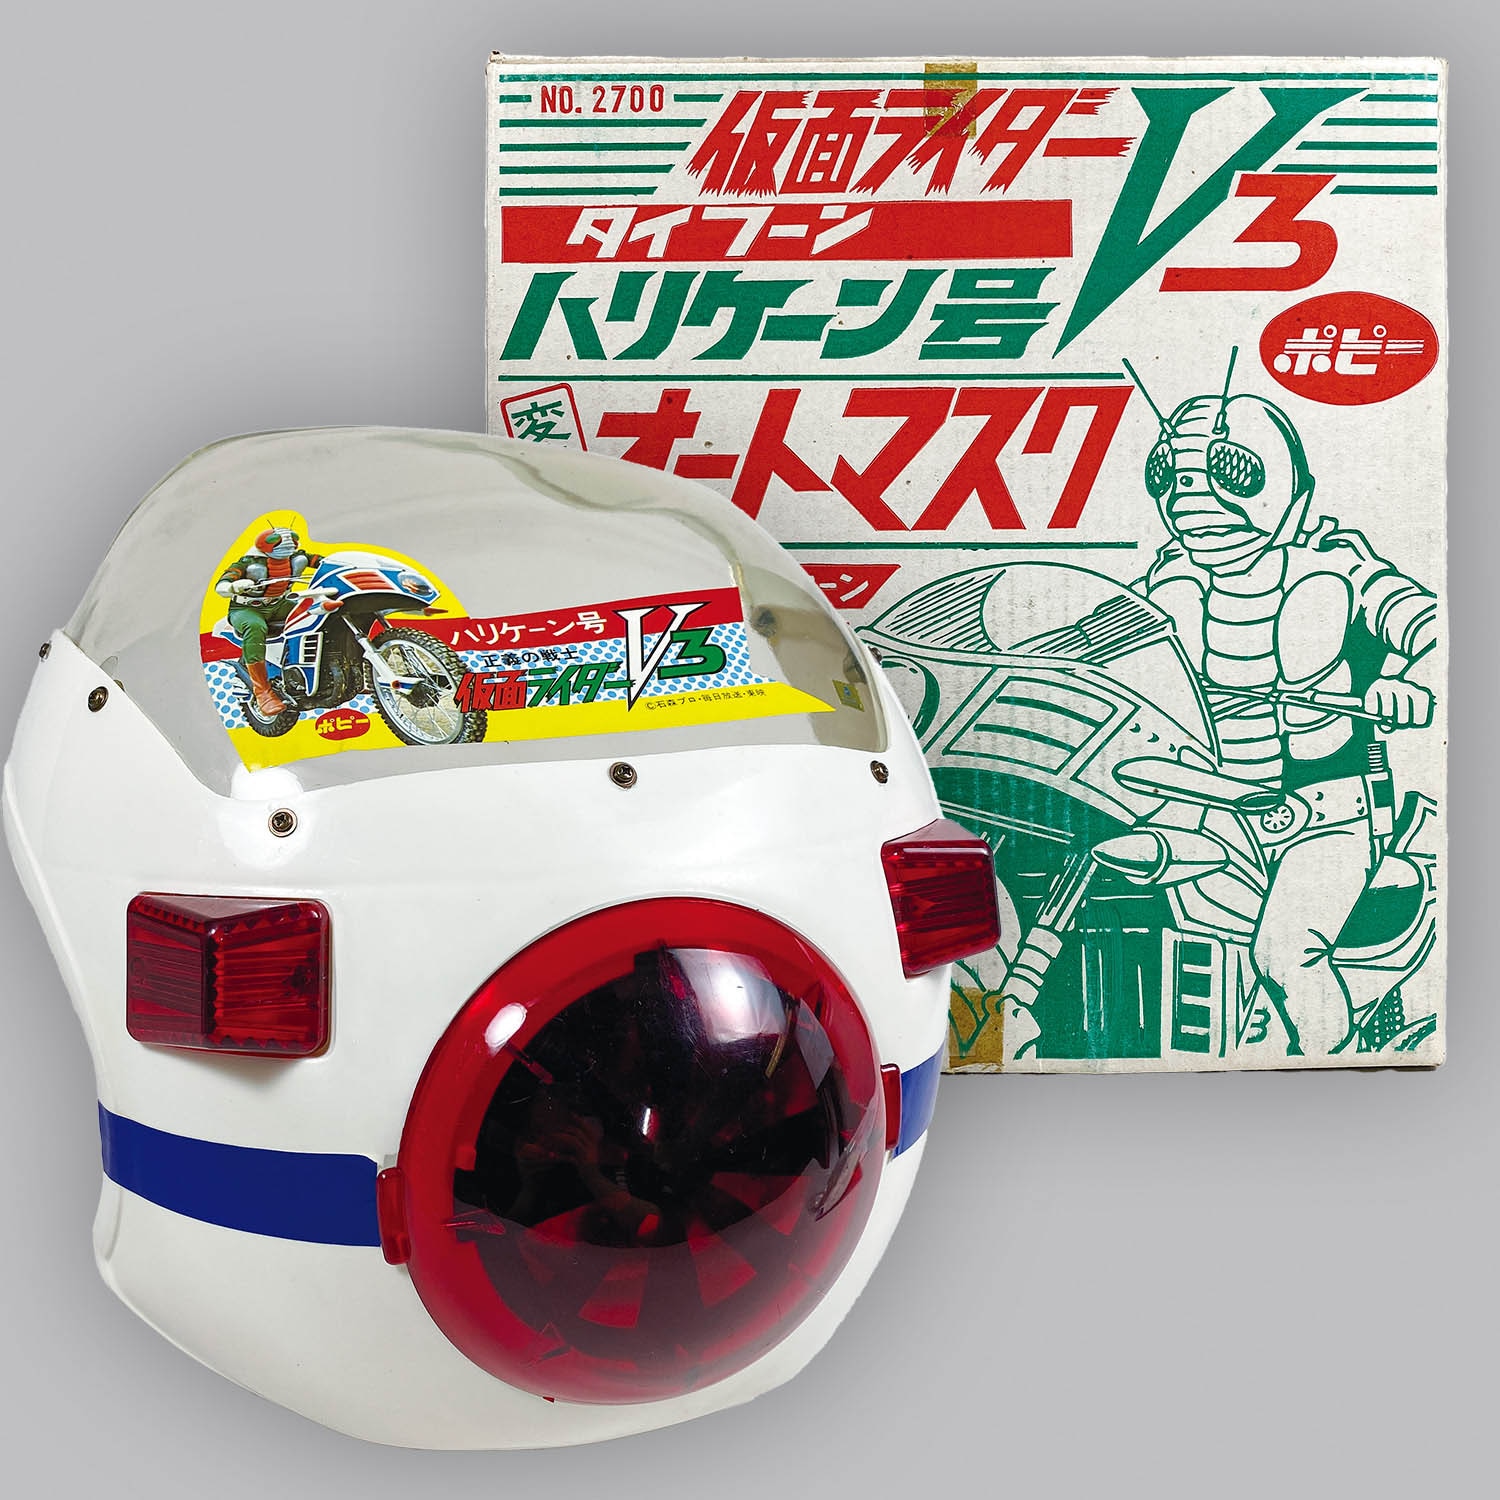 1077] 仮面ライダーV3 ハリケーン号変身オートマスク